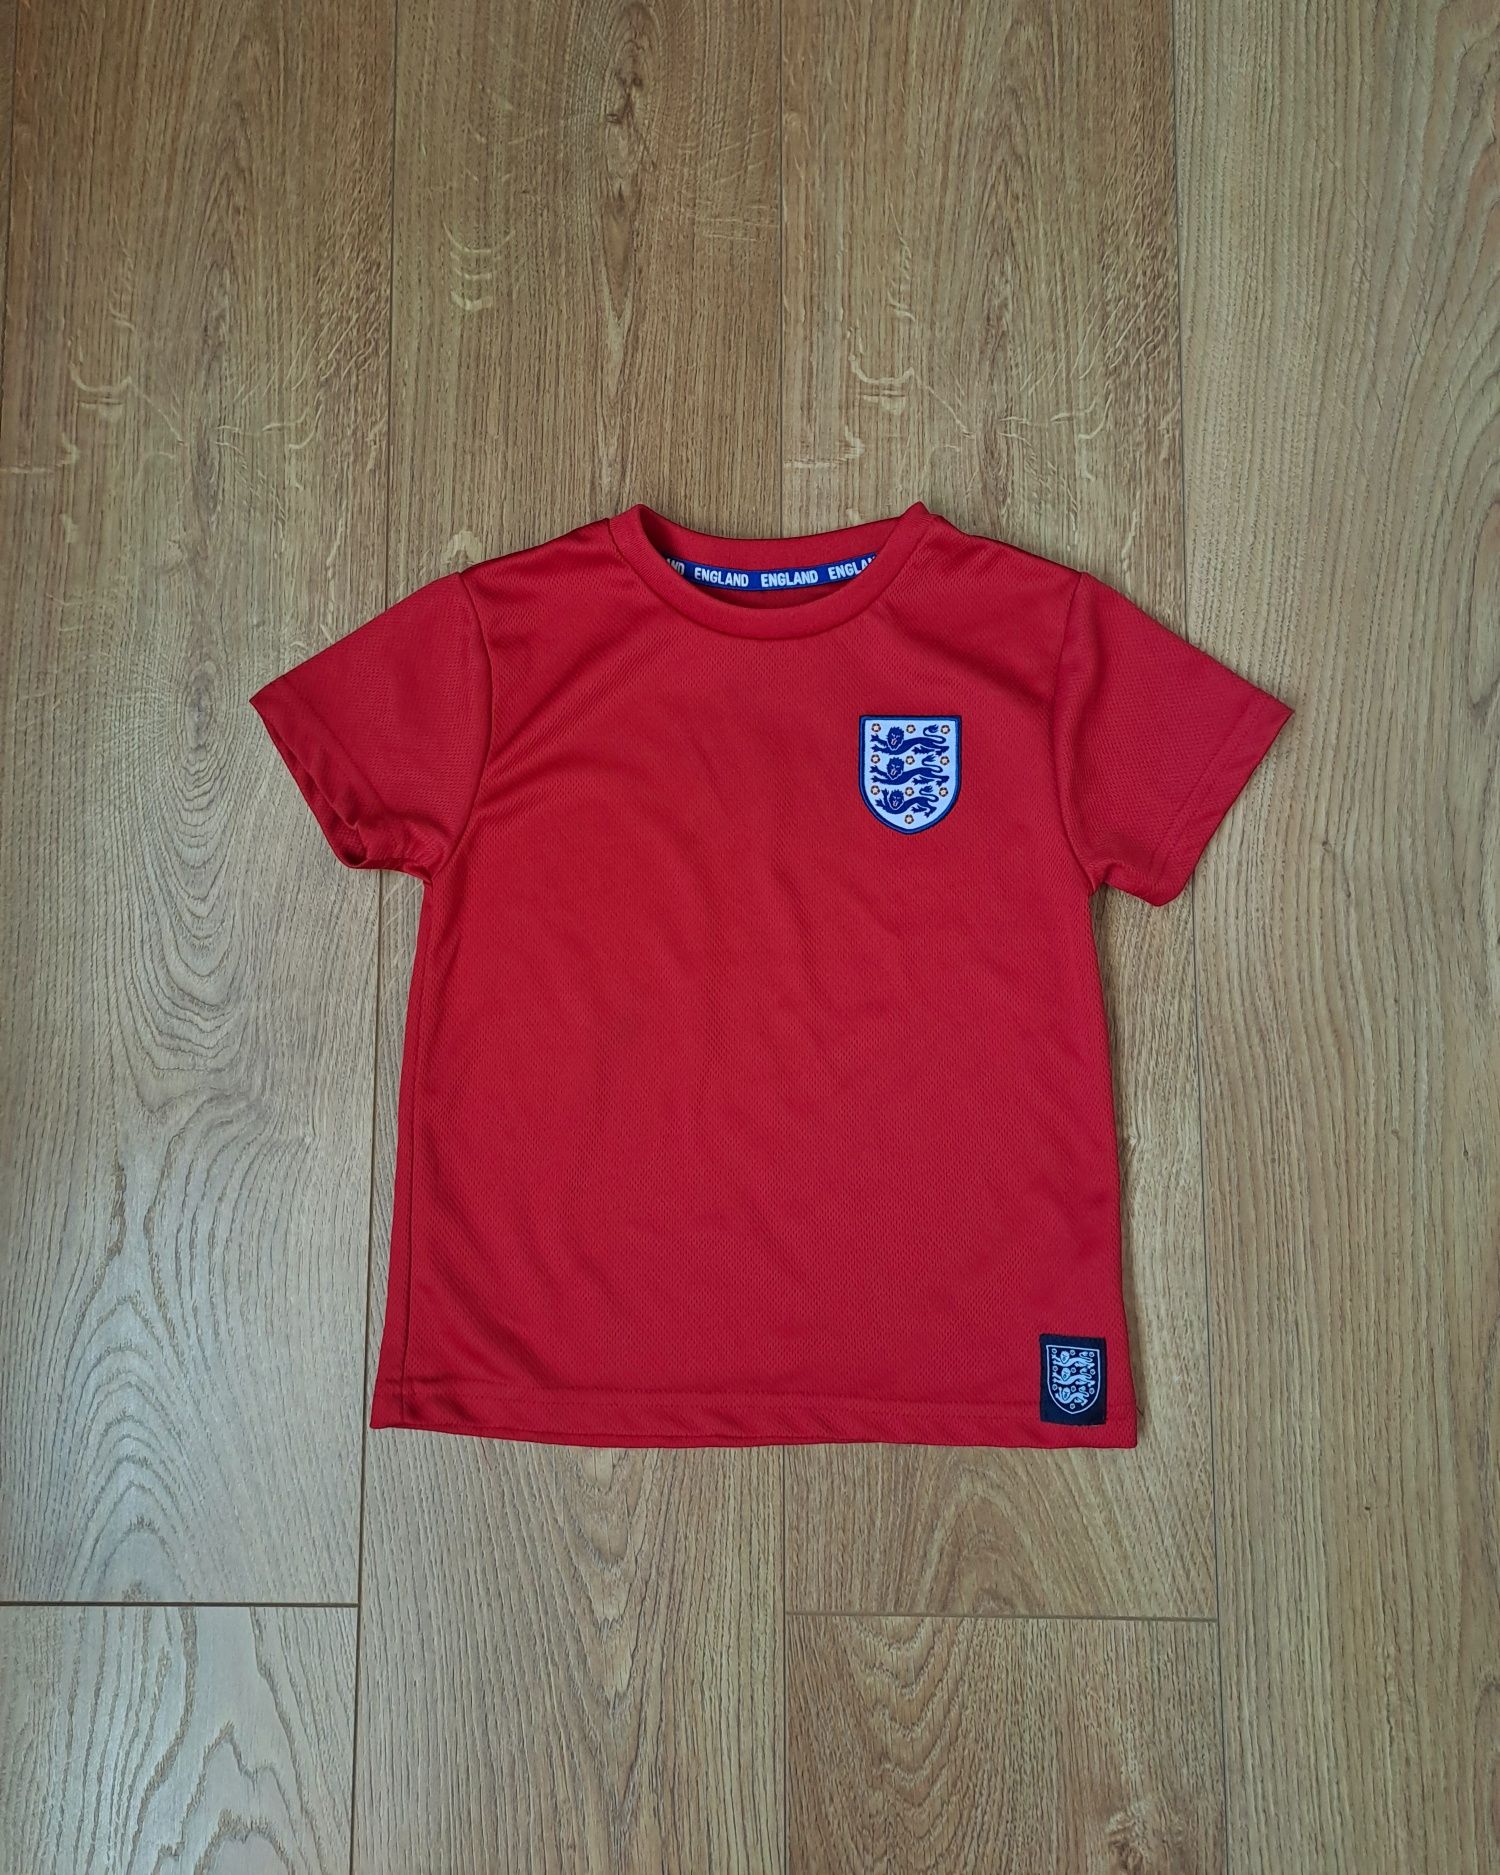 Летний набор для мальчика/футбольная спортивная форма/футболка/шорты